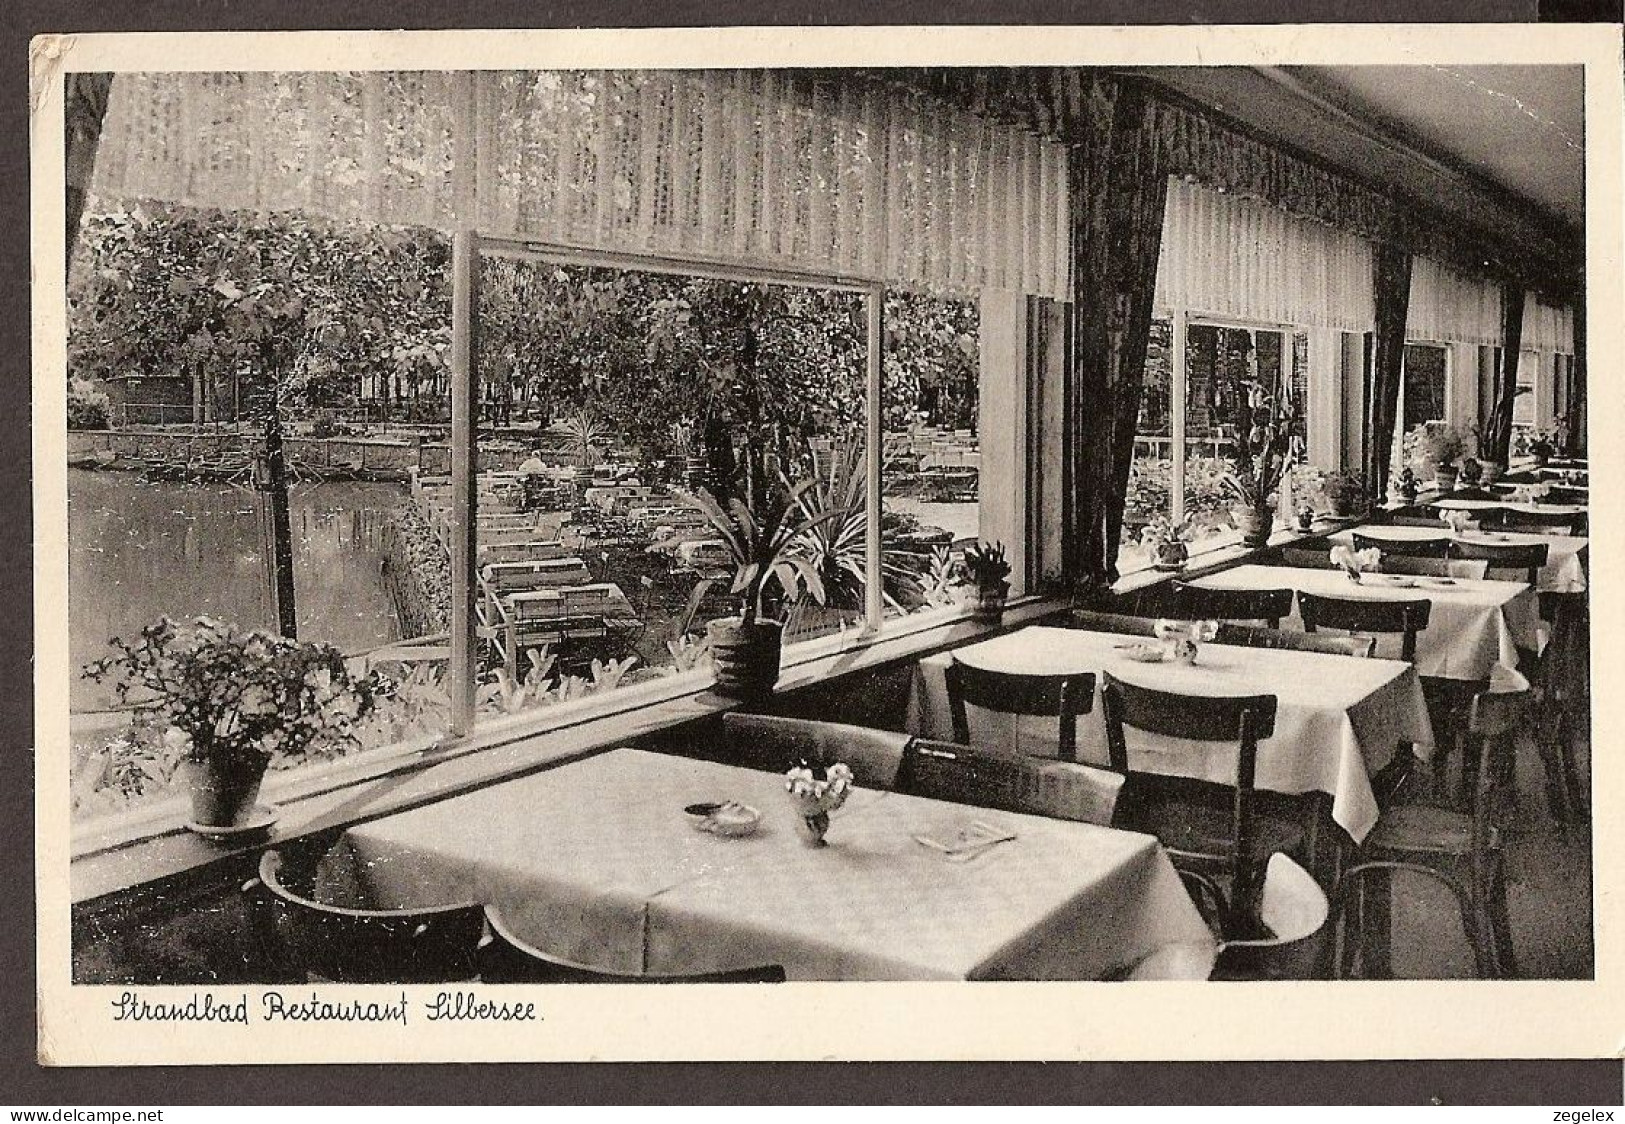 Kapellen B. Mörs - Strandbad Restaurant Silbersee  - Moers